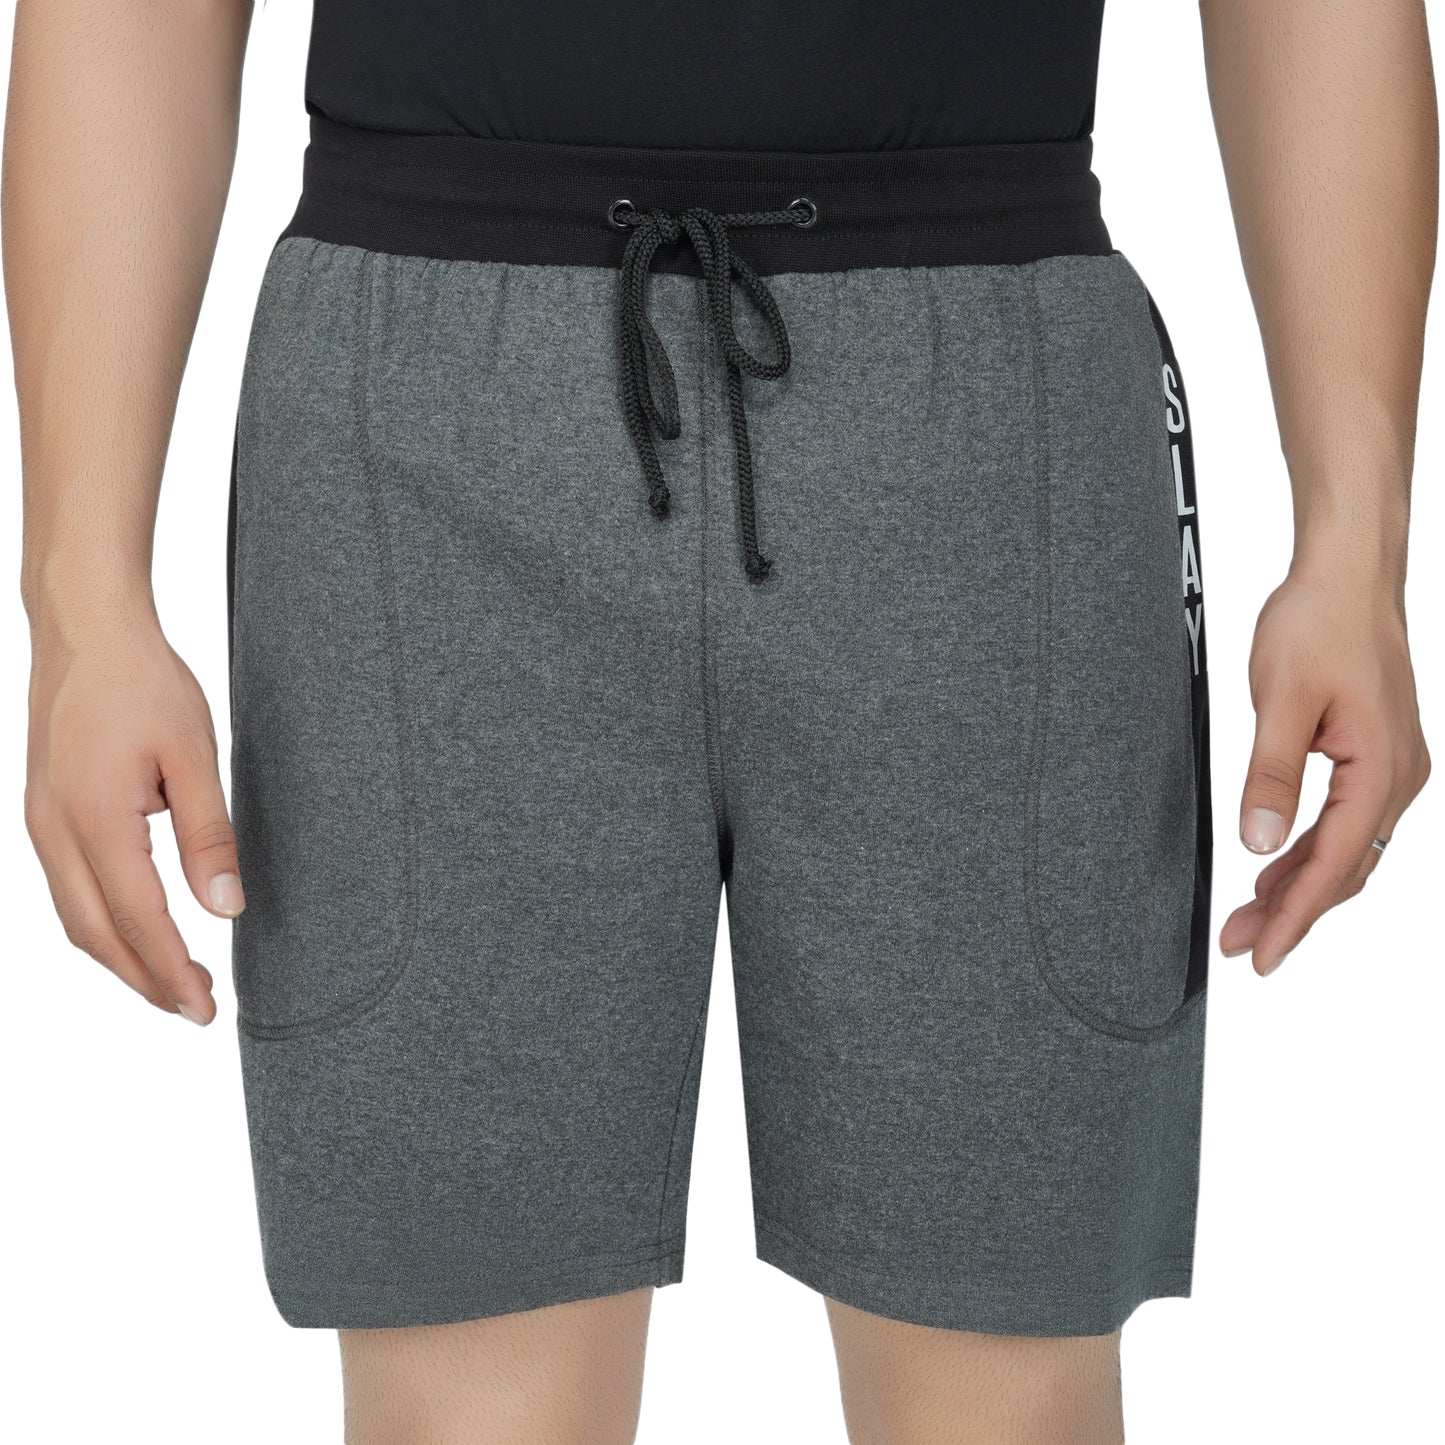 SLAY. Men's Dark Grey Shorts with Black Stripes-clothing-to-slay.myshopify.com-Men's Shorts